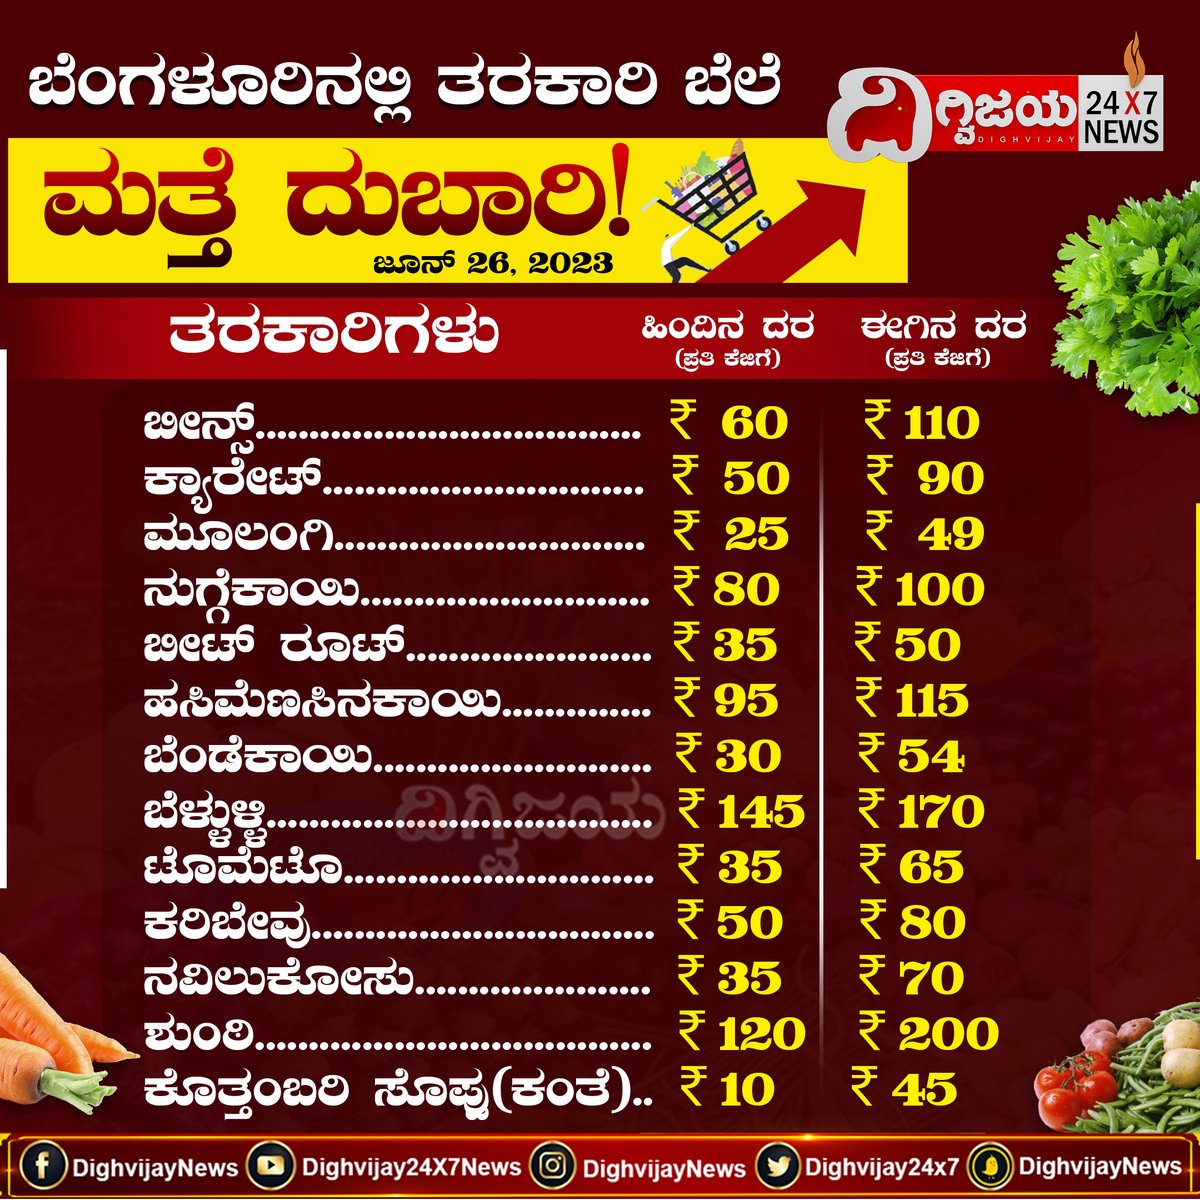 ಬೆಂಗಳೂರಿನಲ್ಲಿ ತರಕಾರಿಗಳ ಬೆಲೆ ಮತ್ತೆ ದುಬಾರಿ!
#vegetables #pricehike #vegetablepricehike #bengaluru #bangalore #latestnews #kannadanews #DighvijayNews